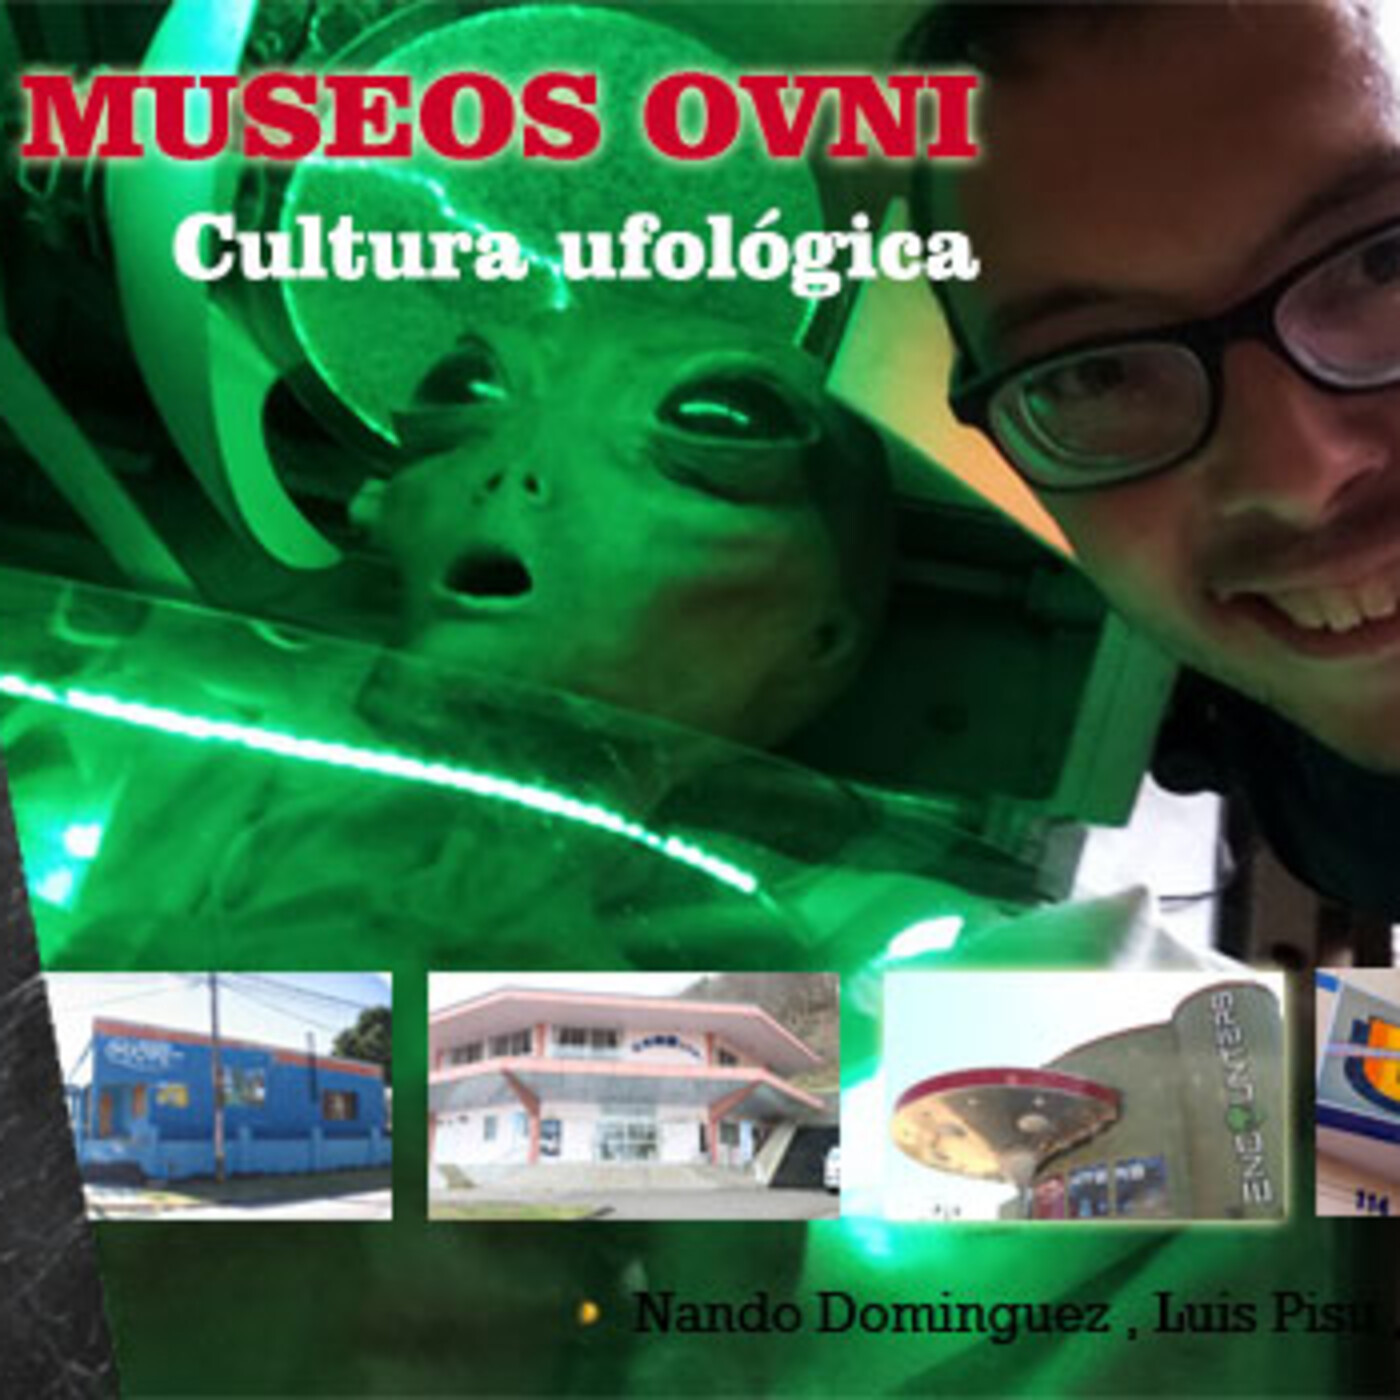 La Puerta al Misterio - Listado de Museos Ovni - UFOs Museum